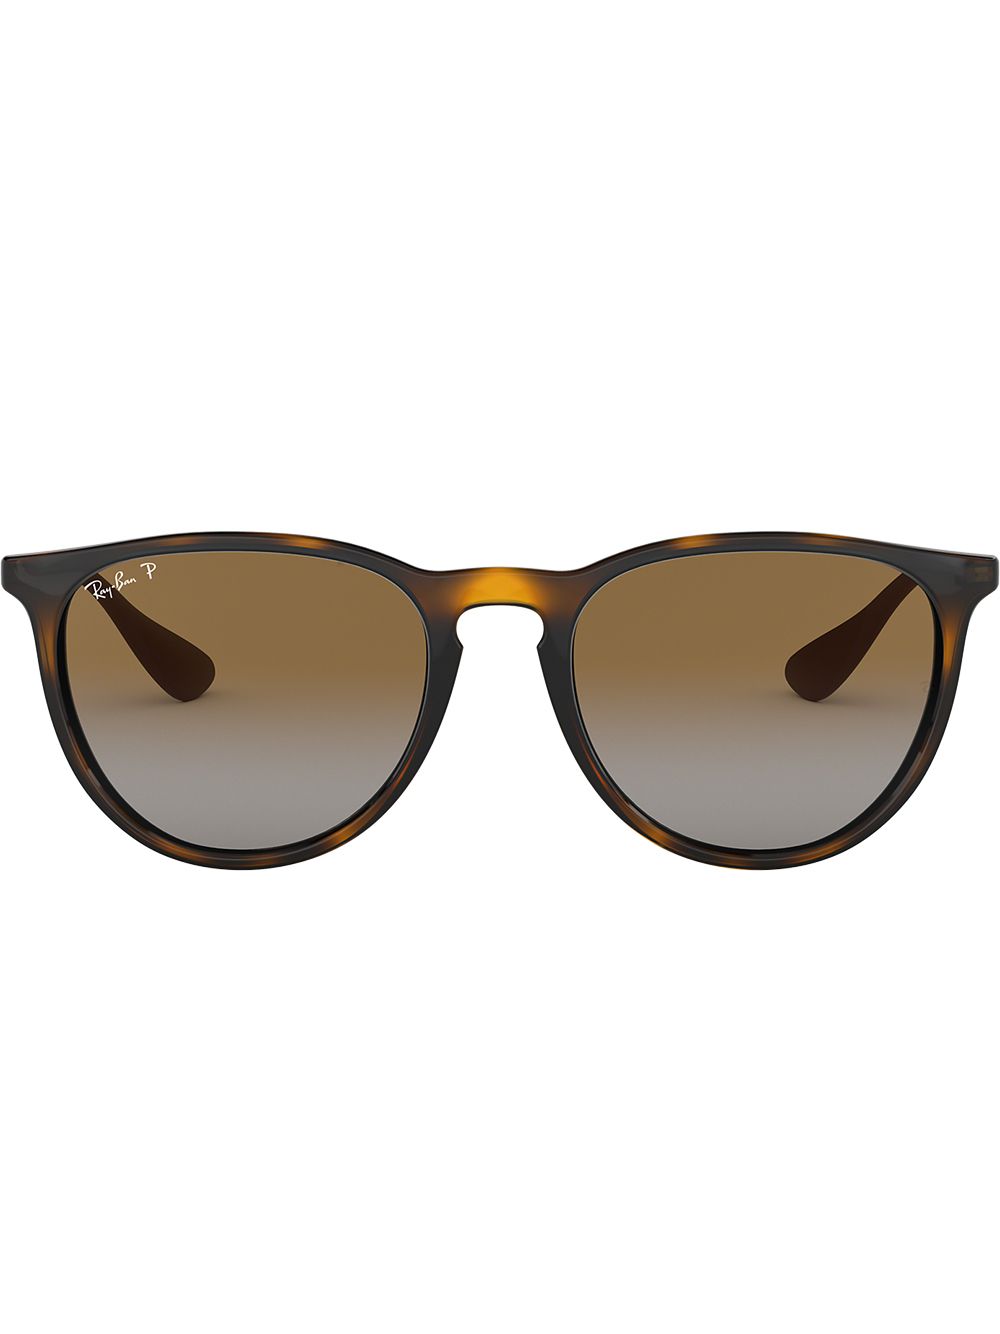 Image 1 of Ray-Ban Erika round-frame sunglasses